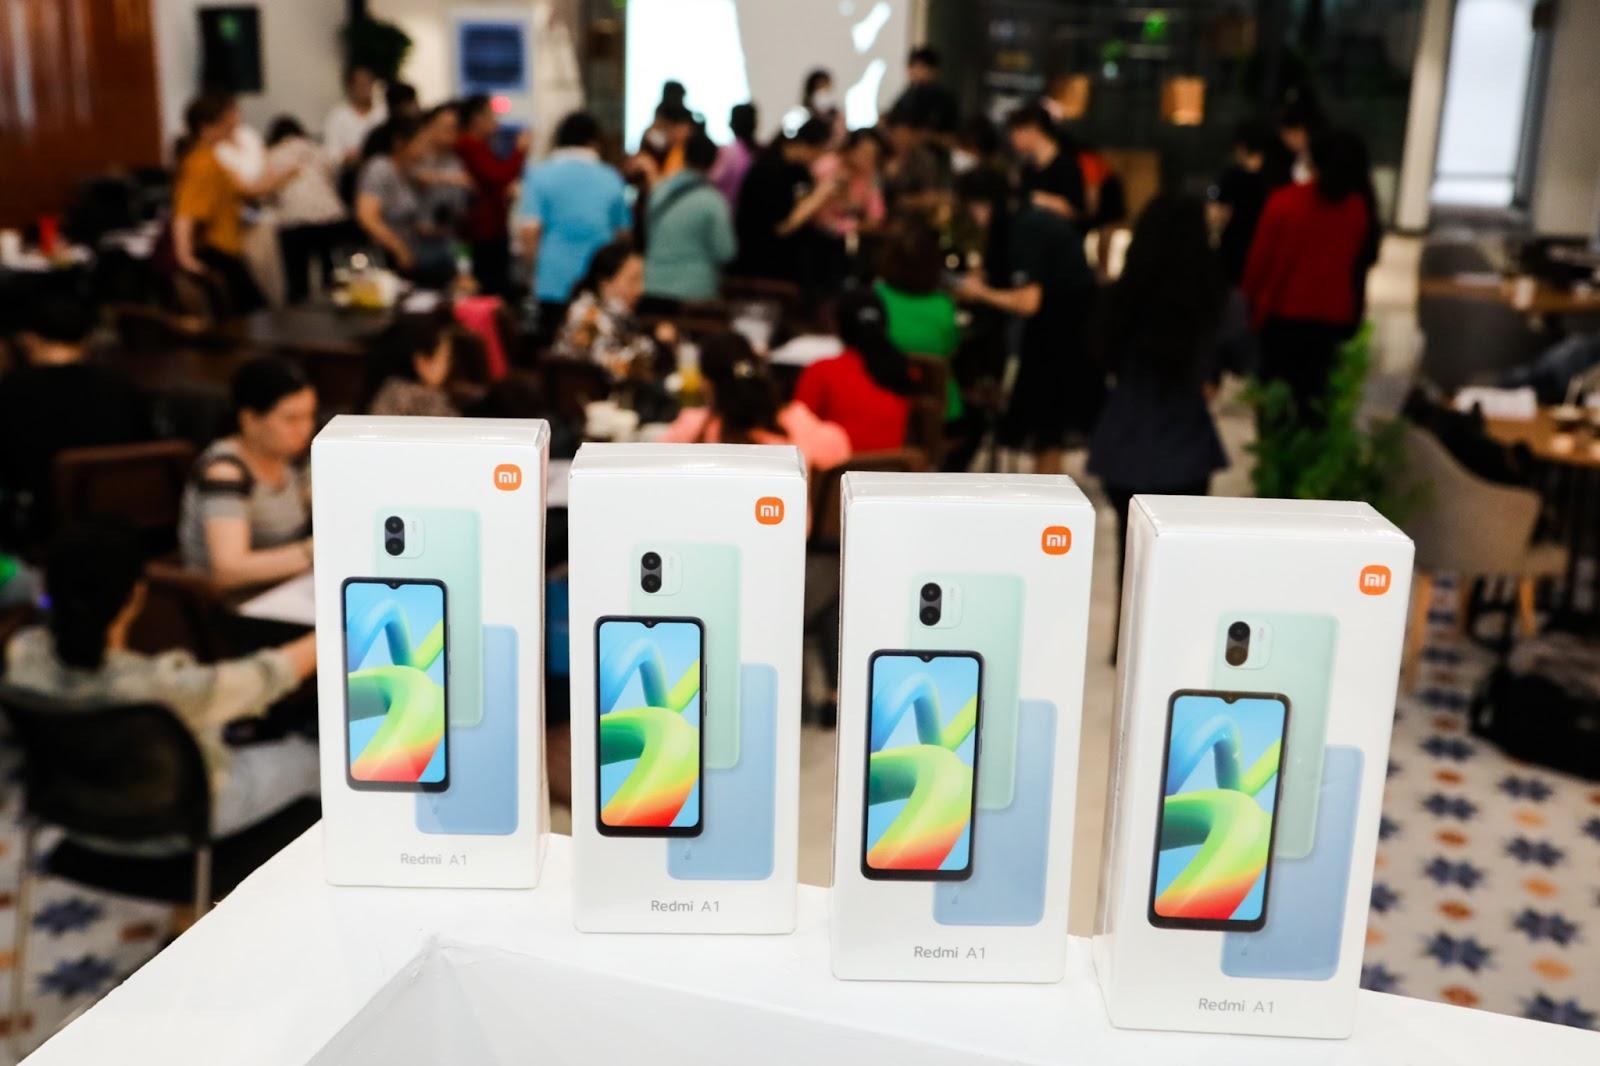 Xiaomi trao tặng 100 smartphone đến chị em phụ nữ dự định lập nghiệp trong lĩnh vực ăn uống trên nền tảng số